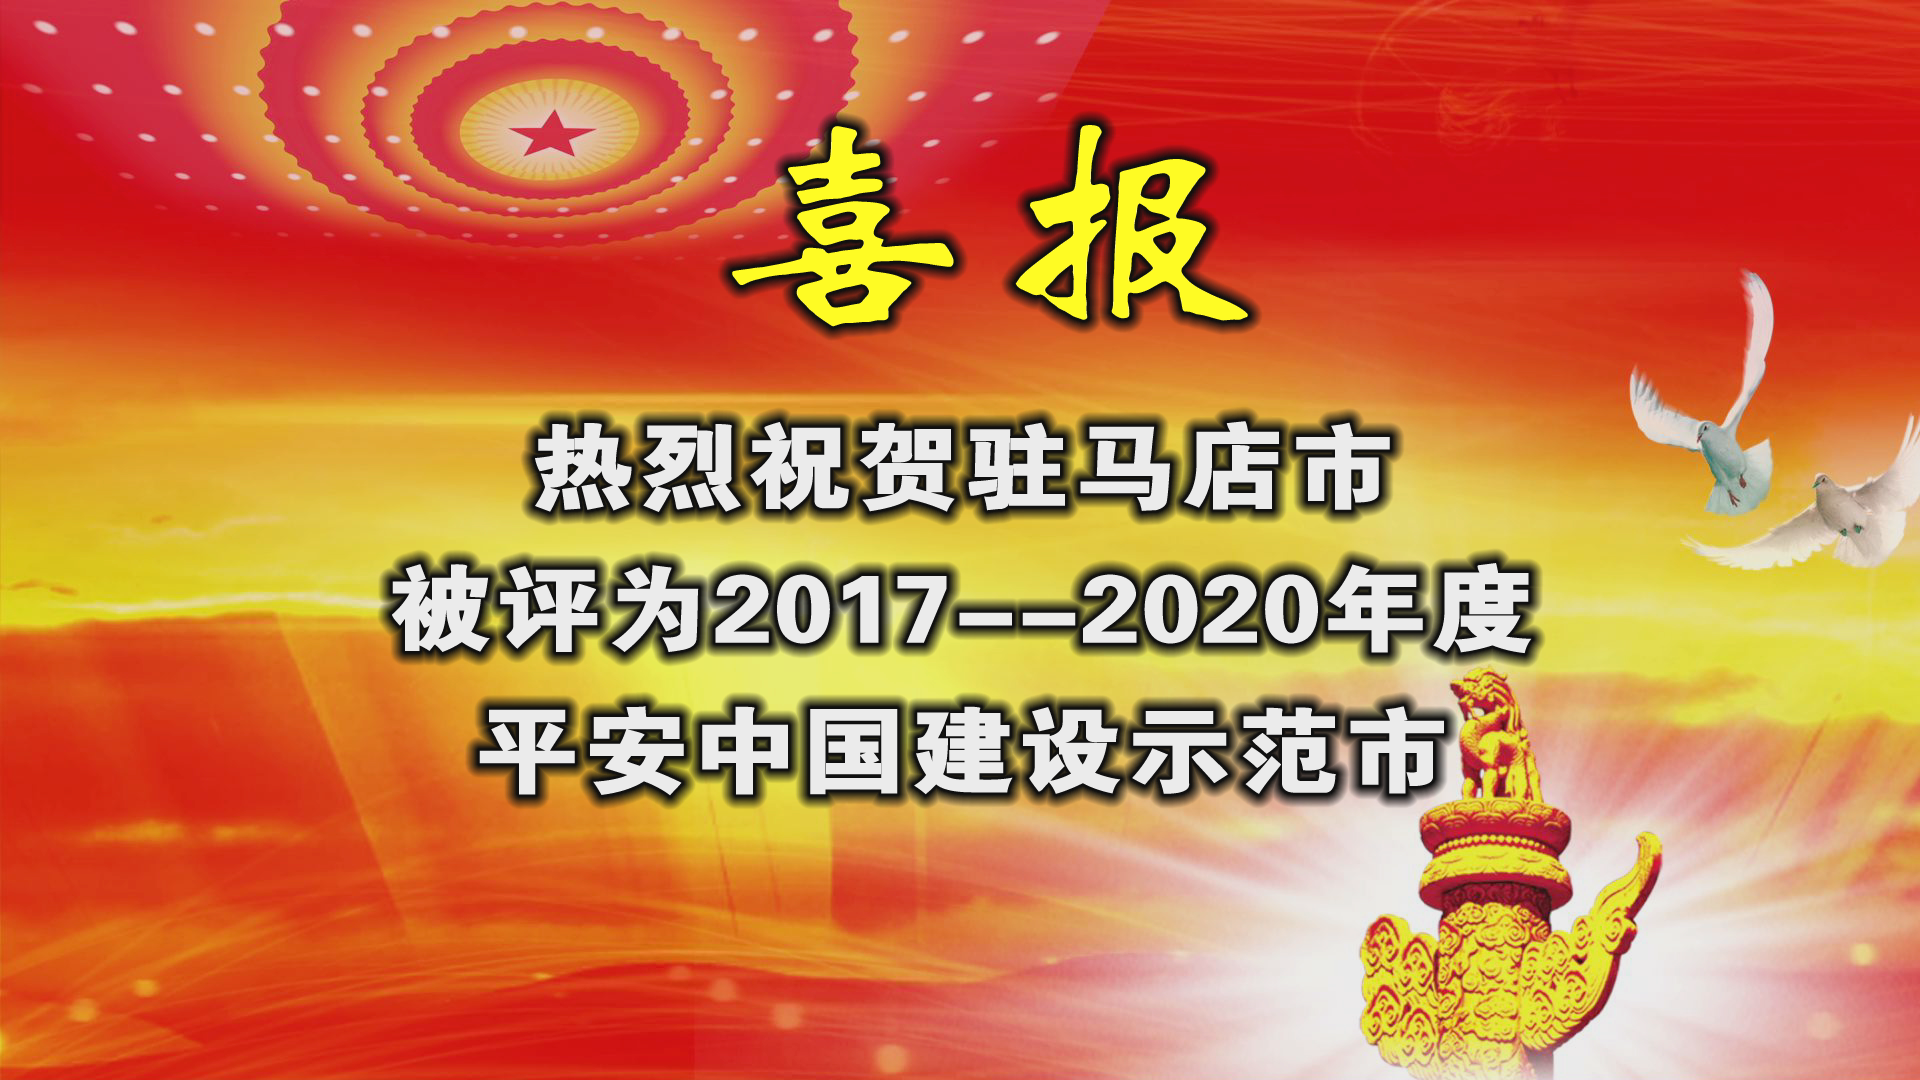 热烈祝贺驻马店市被评为2017-2020年度平安中国建设示范市